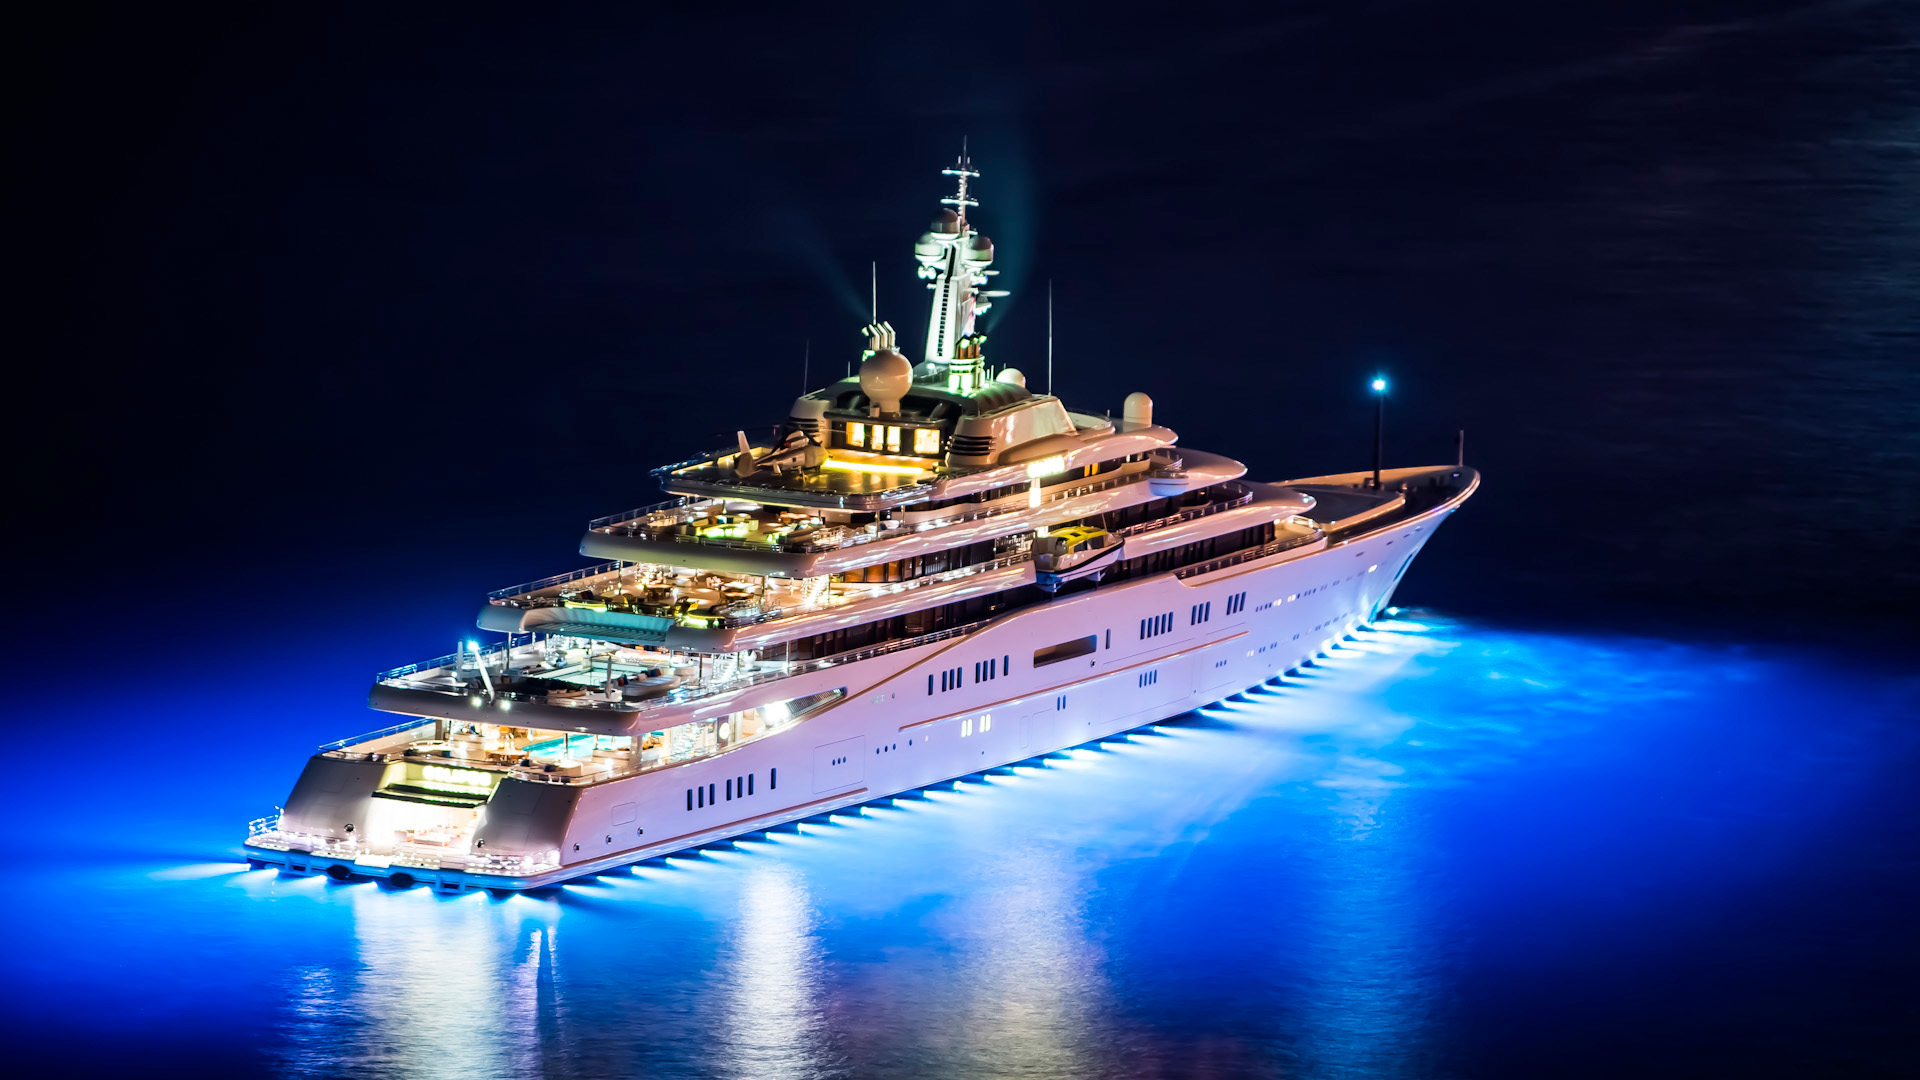 яхта Eclipse Романа Абрамовича (ночное фото с огнями)